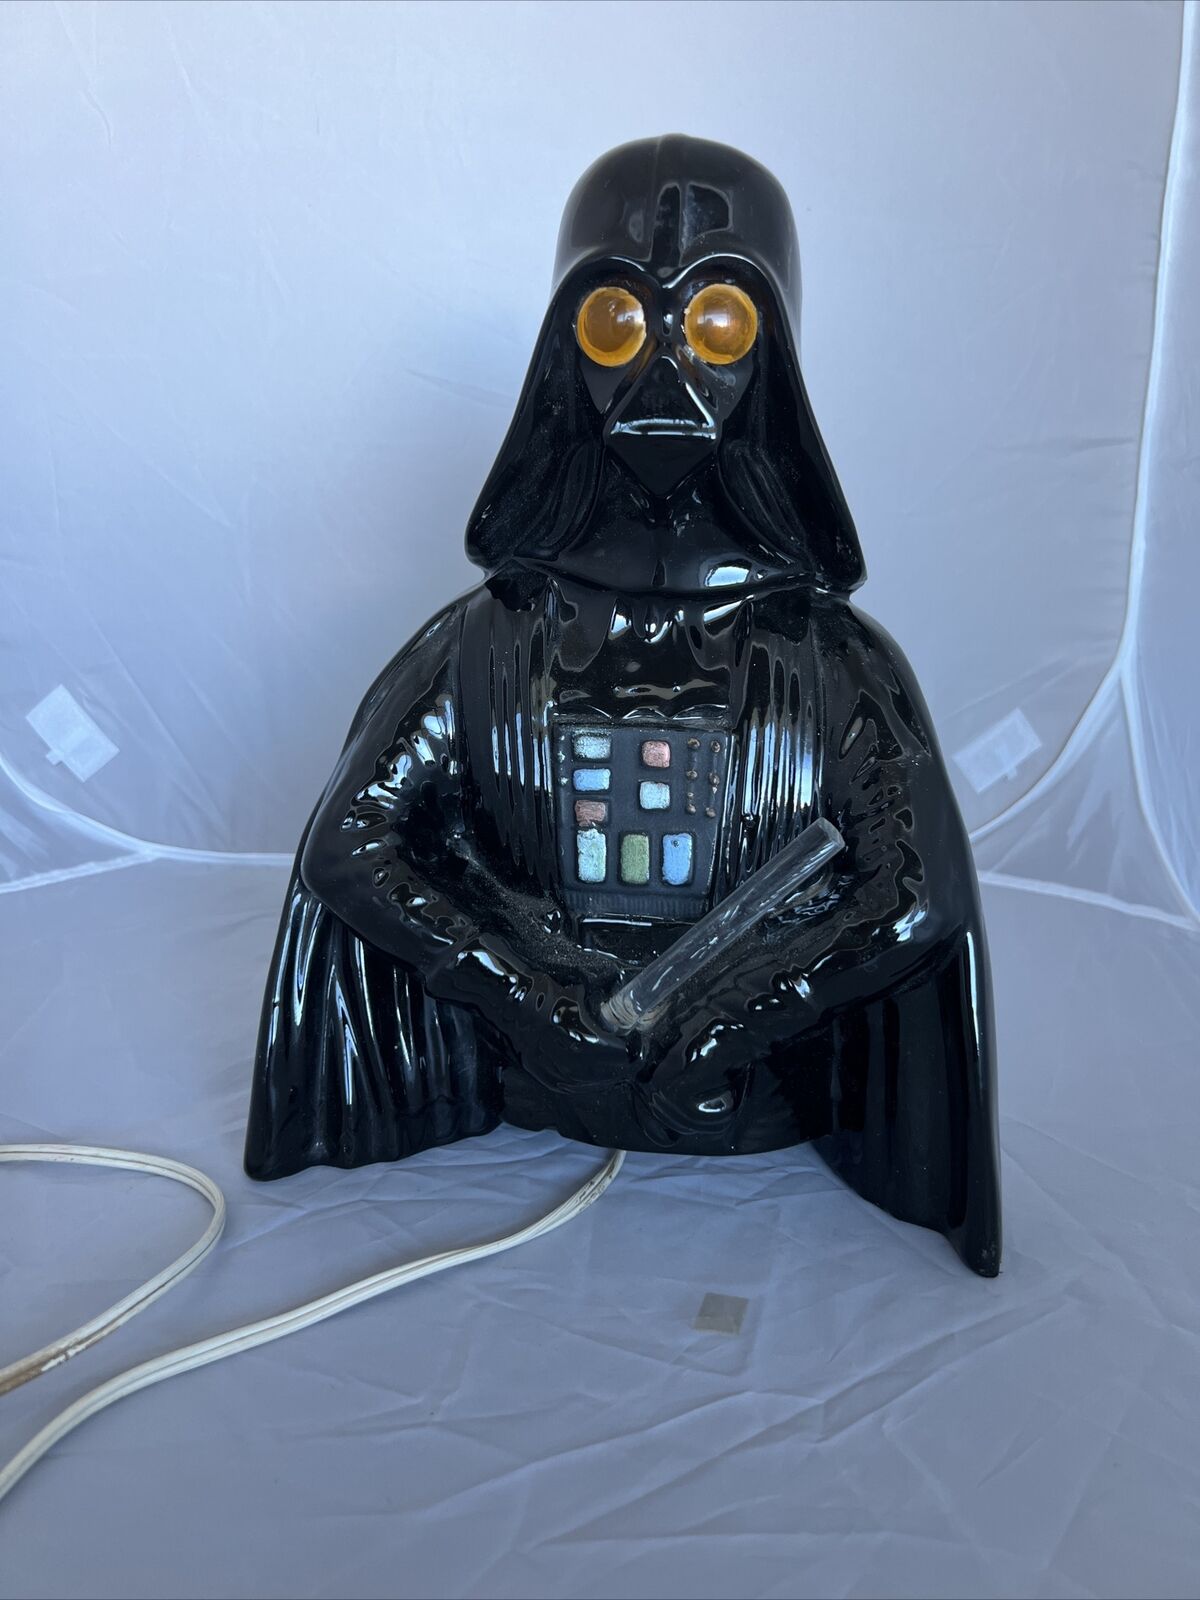 1970S Vintage Star Wars Darth Vader Bust Ceramic Lamp Night